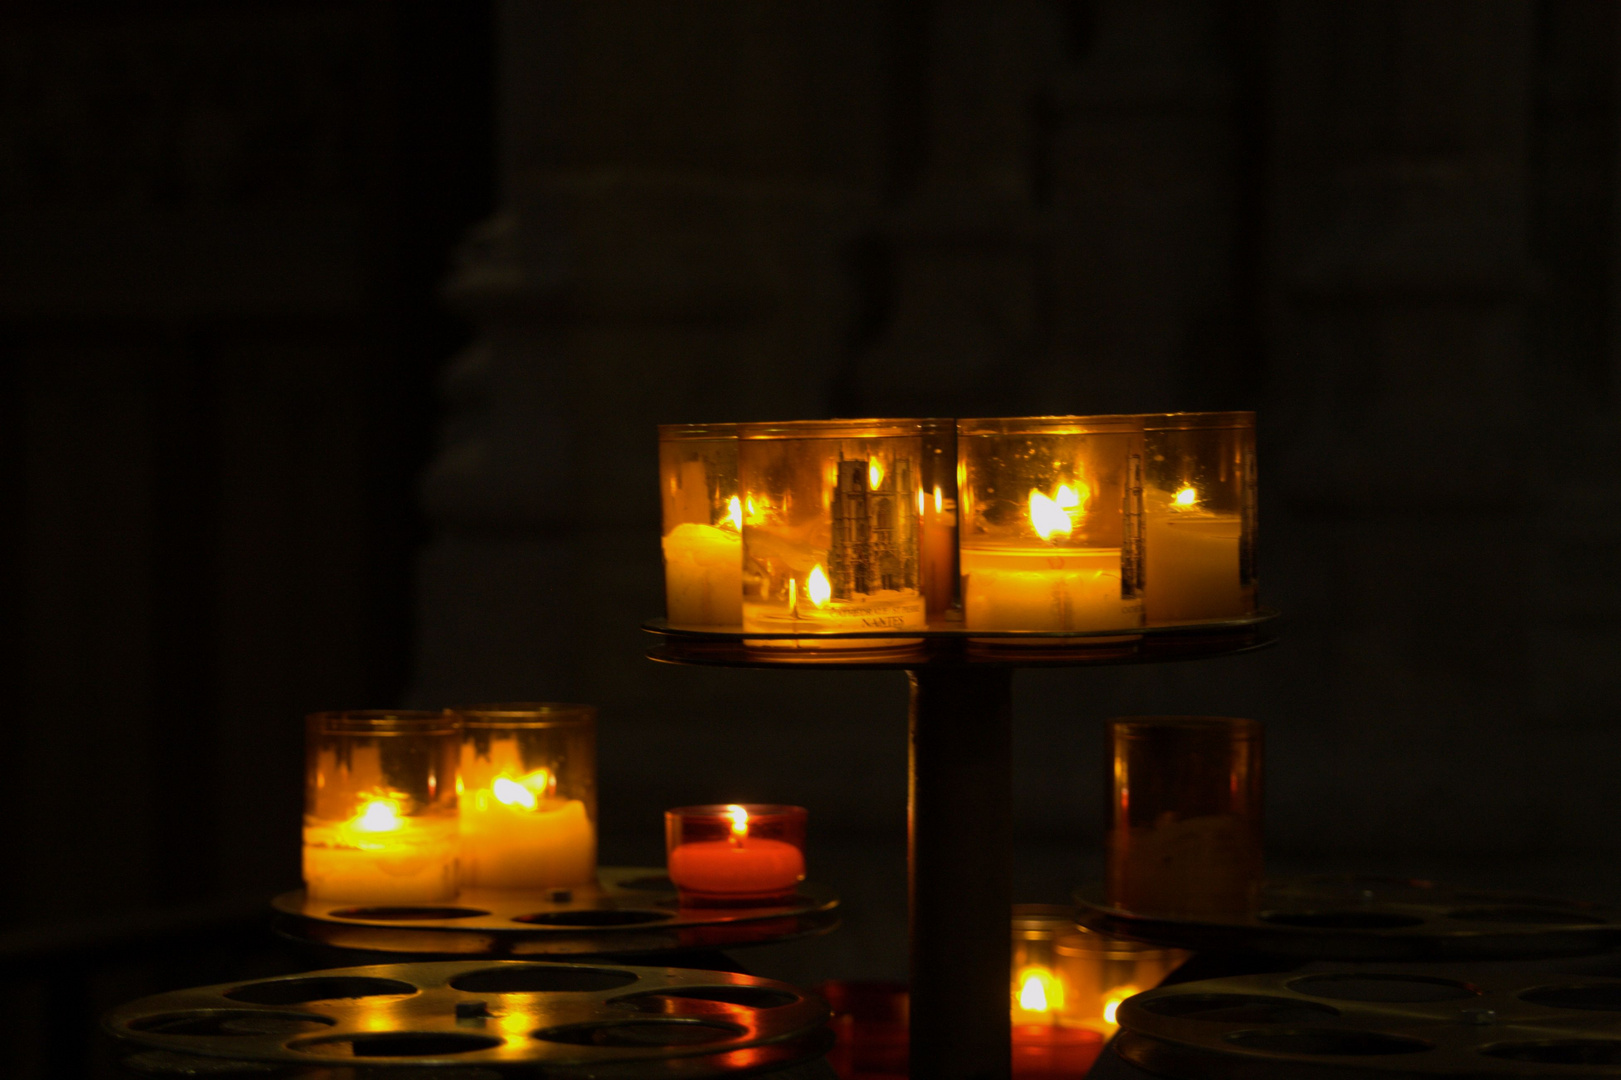 Lumières dans la cathédrale